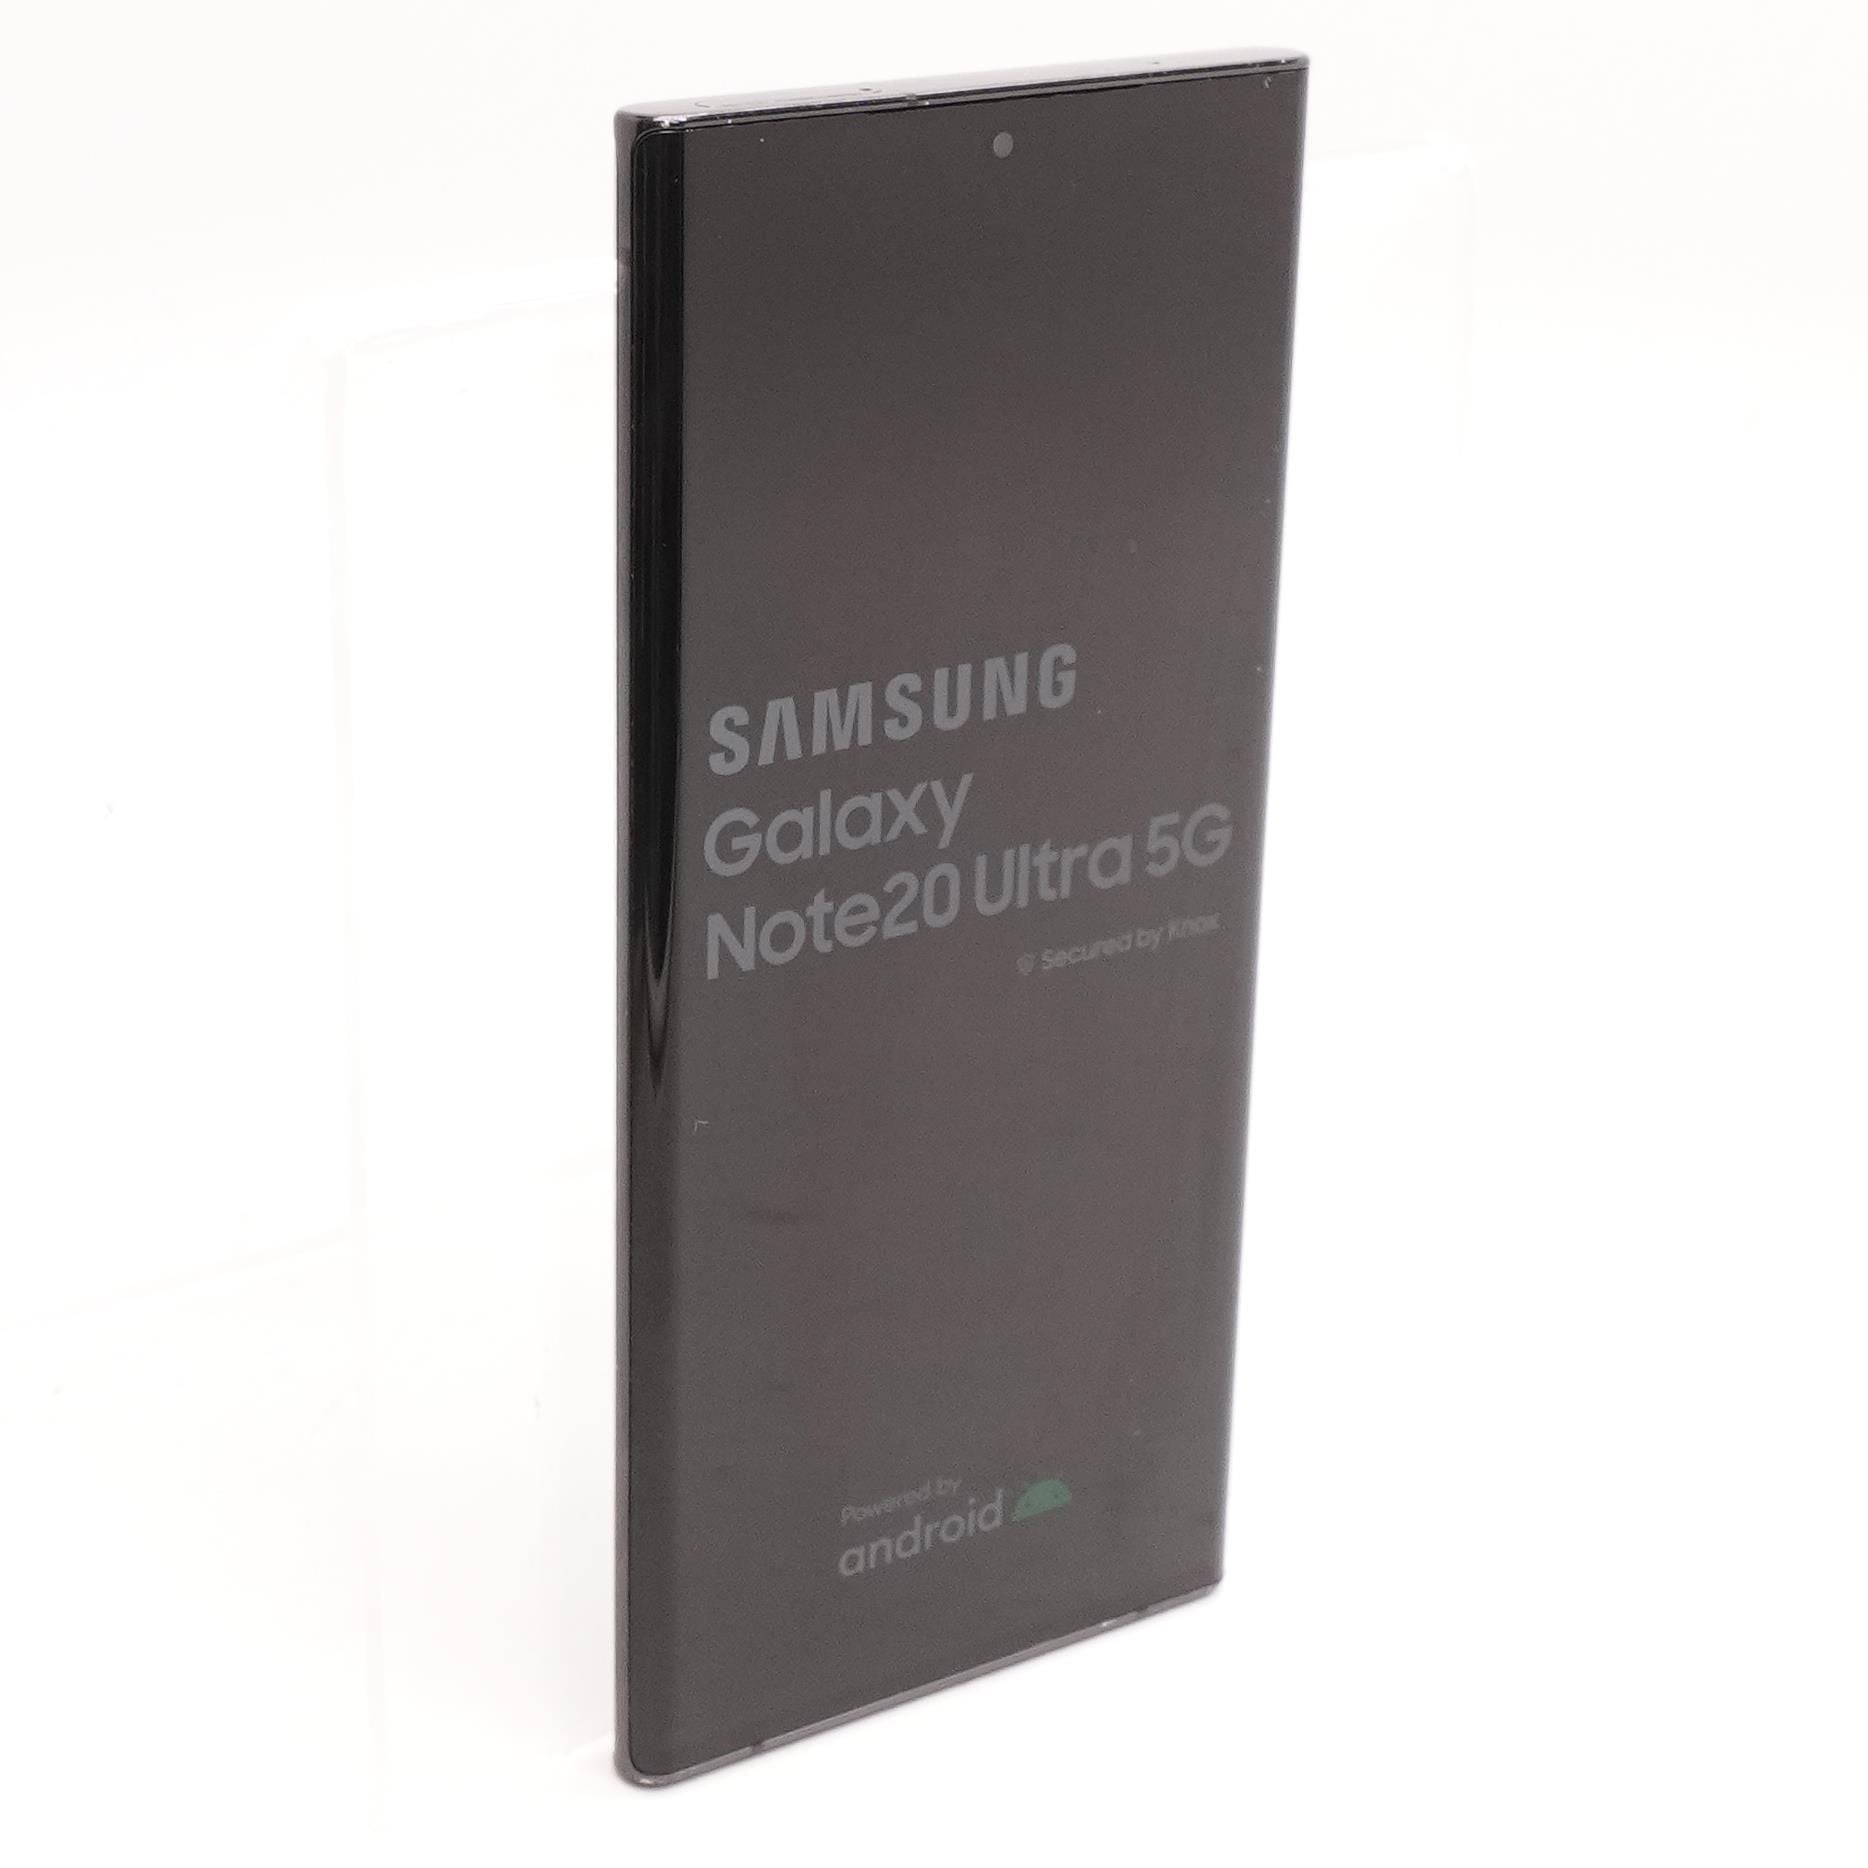  Samsung Galaxy Note 20 Ultra 5G 128GB - Mystic Black